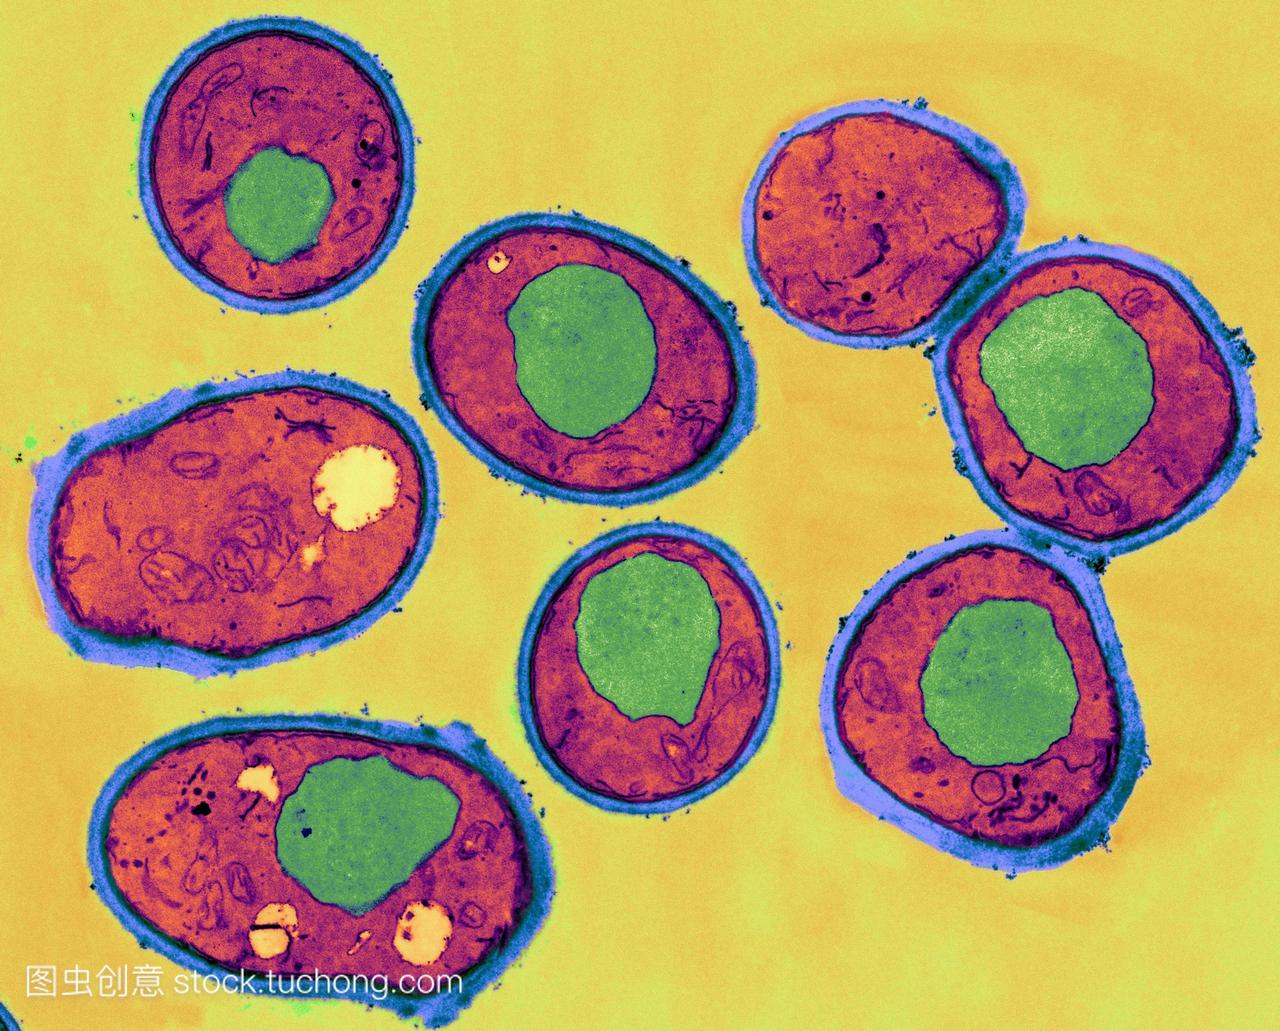 酵母细胞，彩色透射电子显微镜tem。细胞壁呈蓝色，细胞质为红色，液泡为绿色。酵母是一种无性生殖的单细胞真菌。一些酵母被用于烘焙和酿造工业，但有些是致病性的。